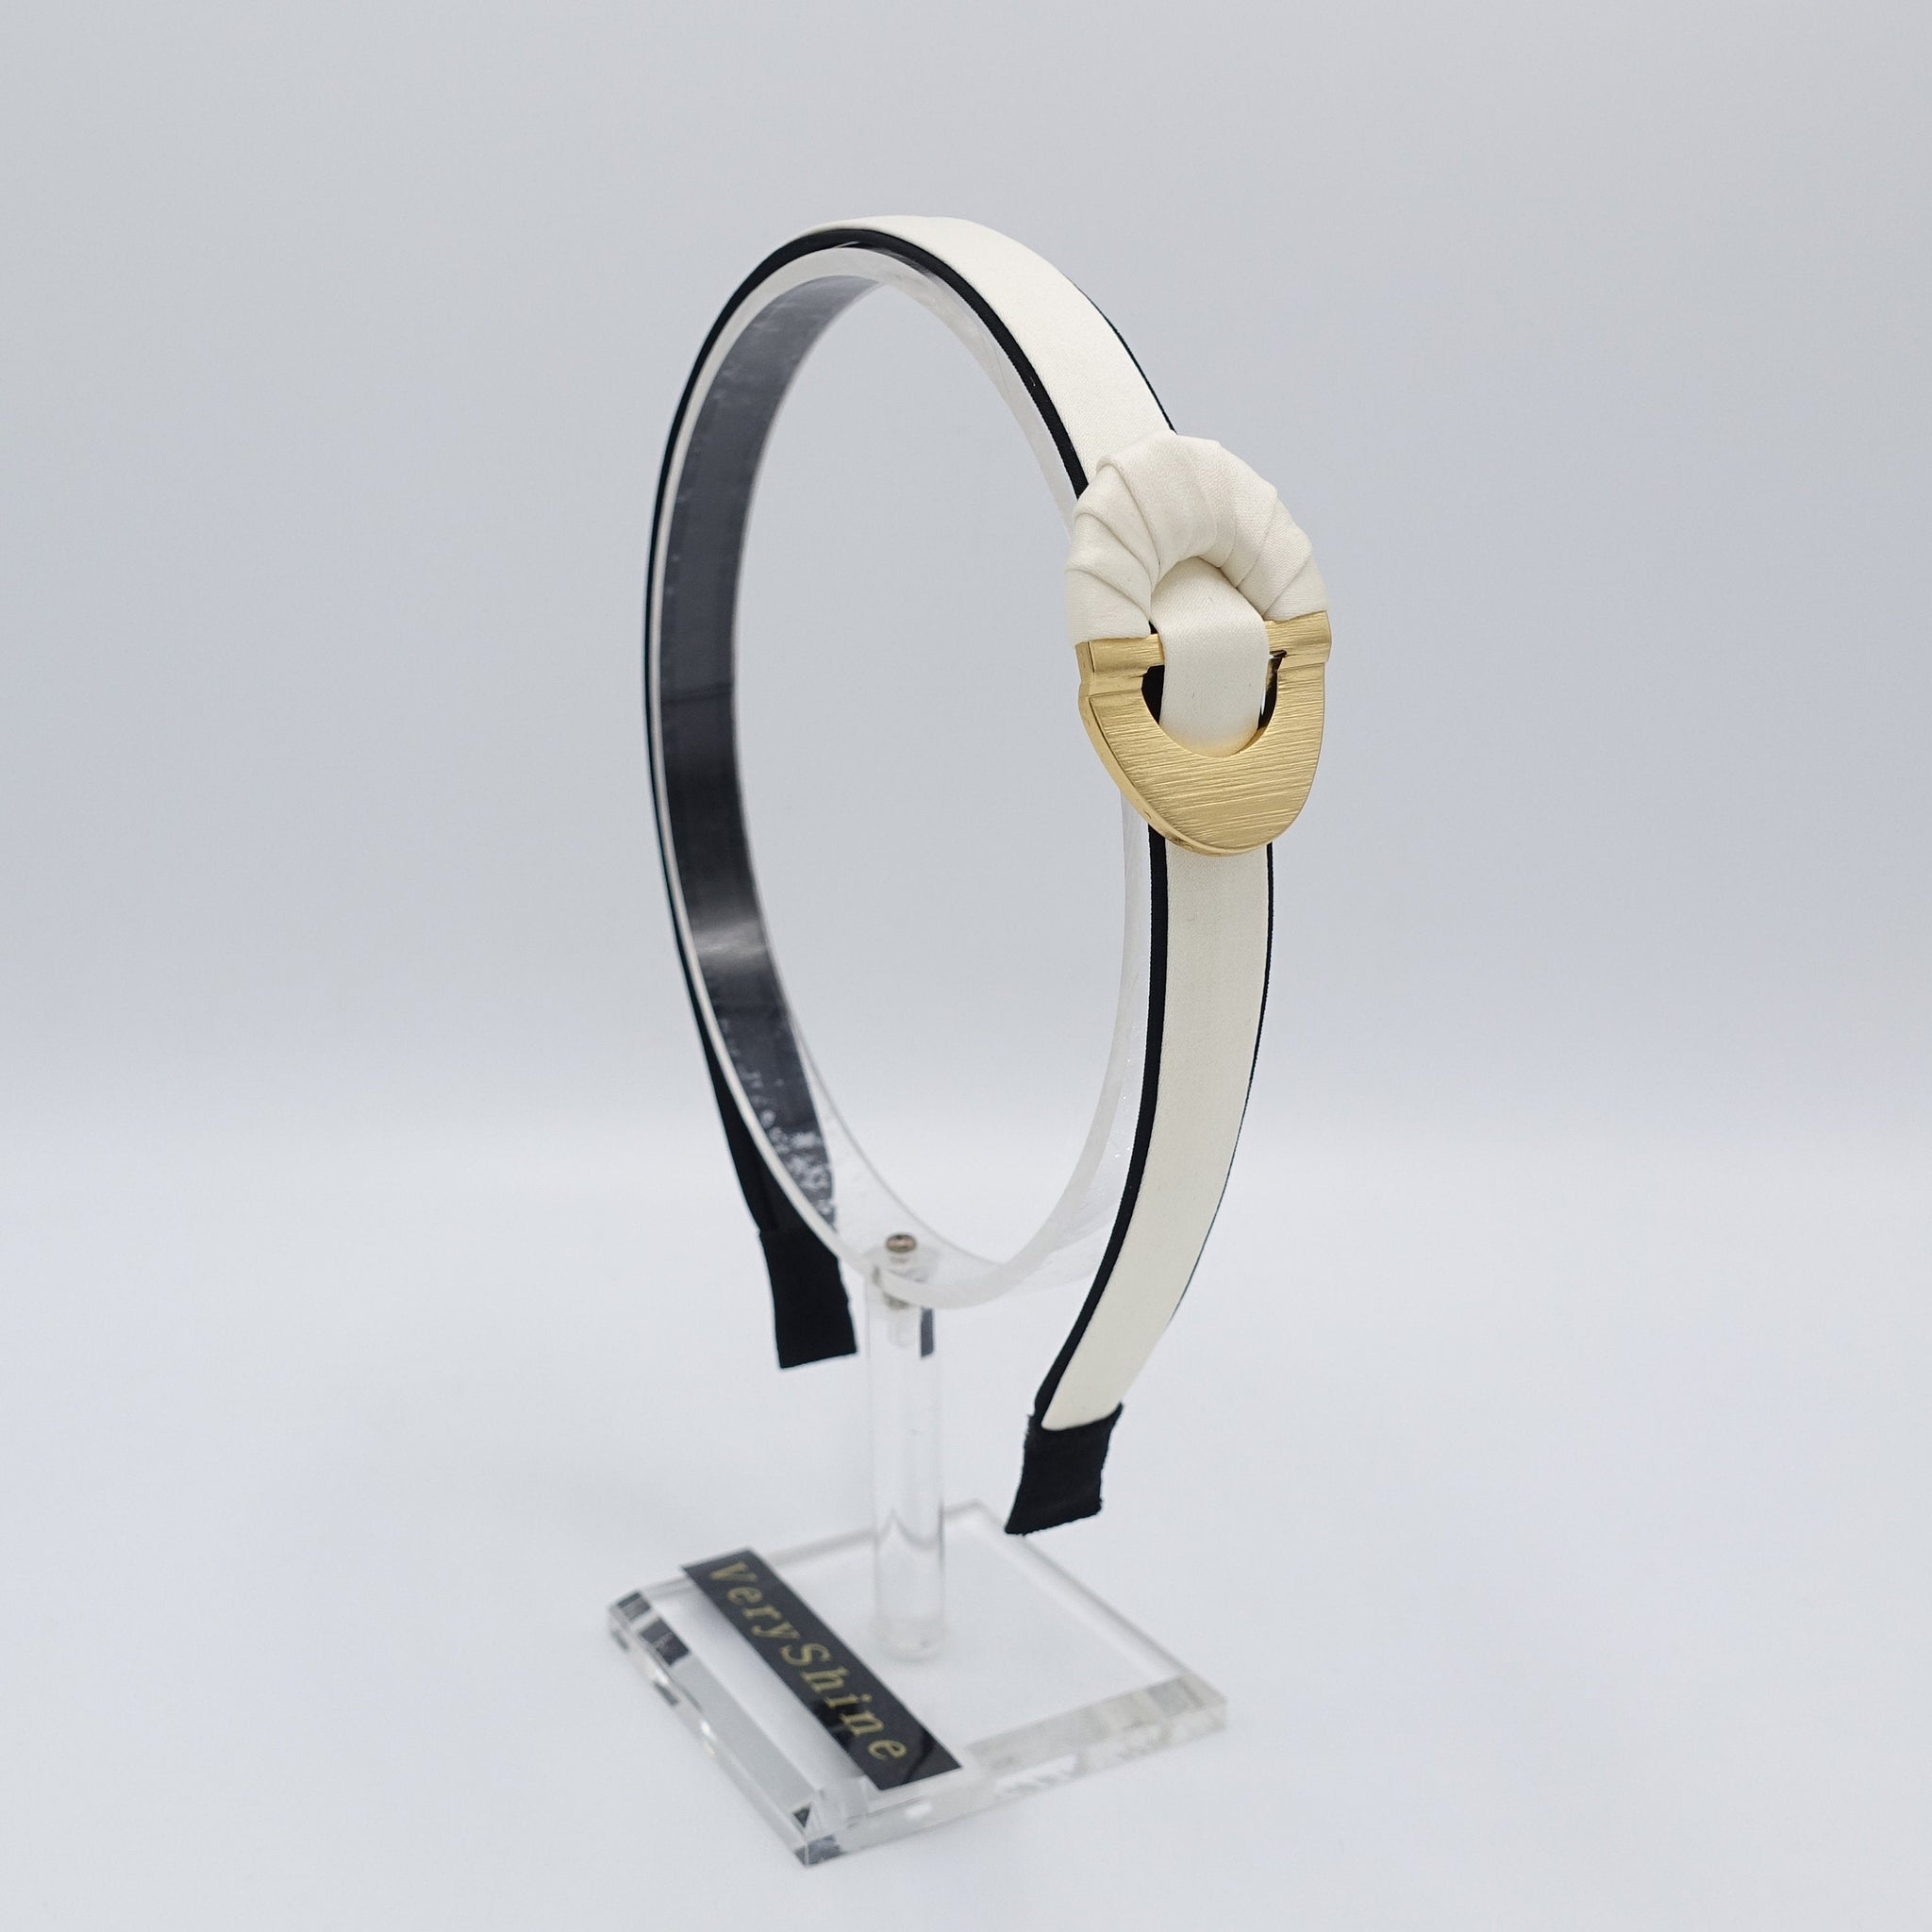 veryshine.com Headband Cream white golden buckle headband, satin headband, stylish headband for women